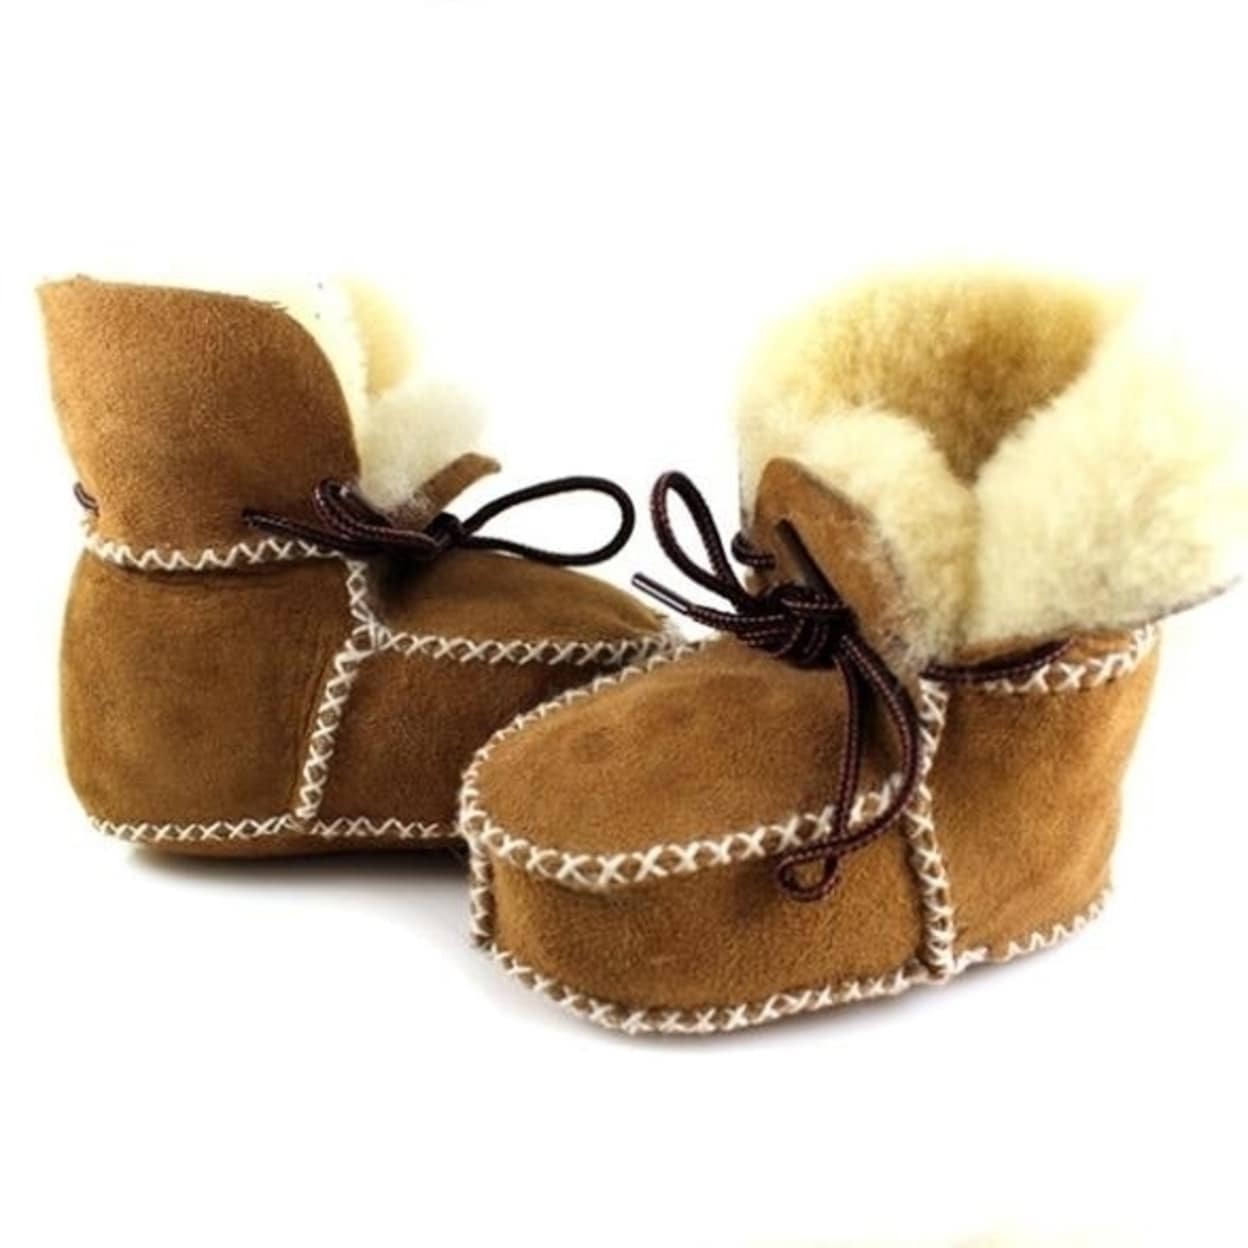 sheepskin baby boots